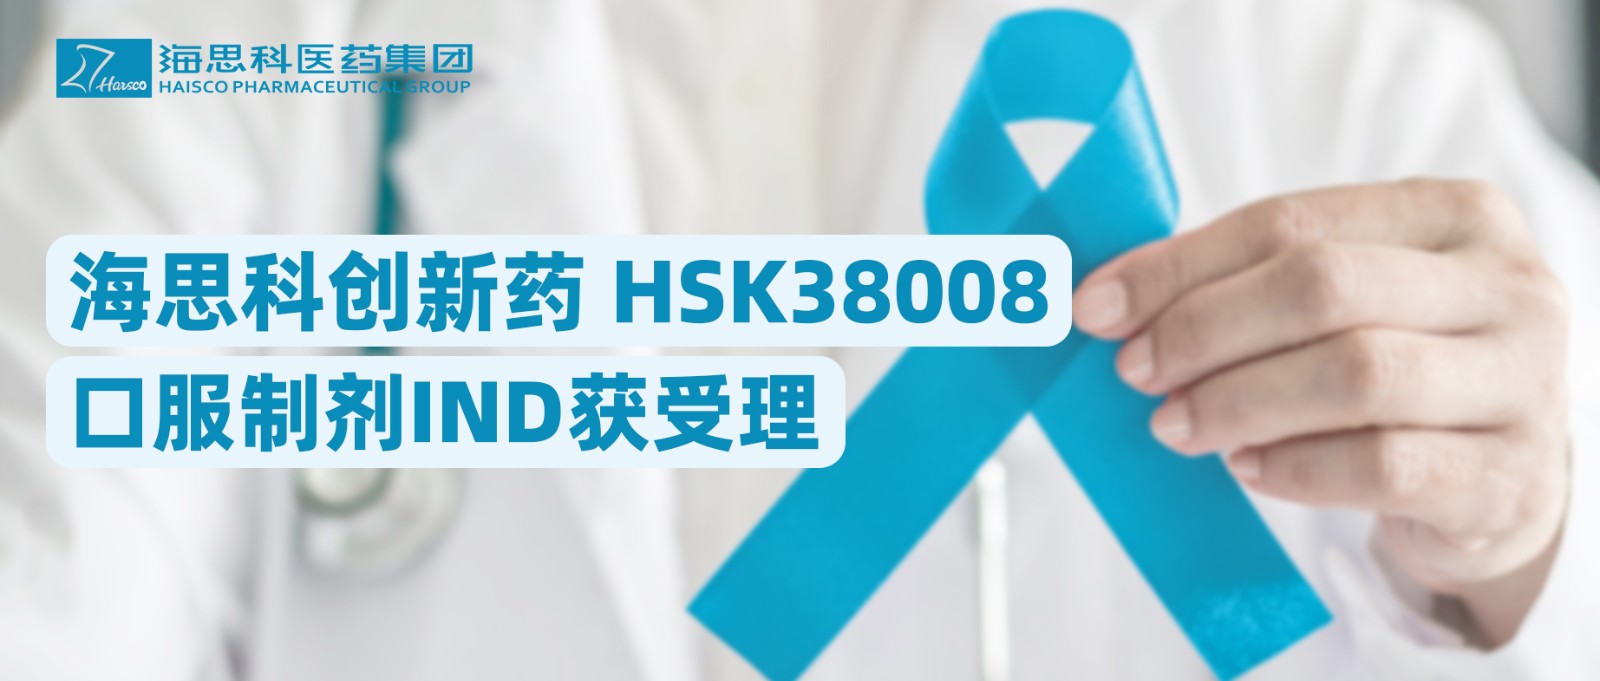 永利总站创新药HSK38008口服制剂IND获受理